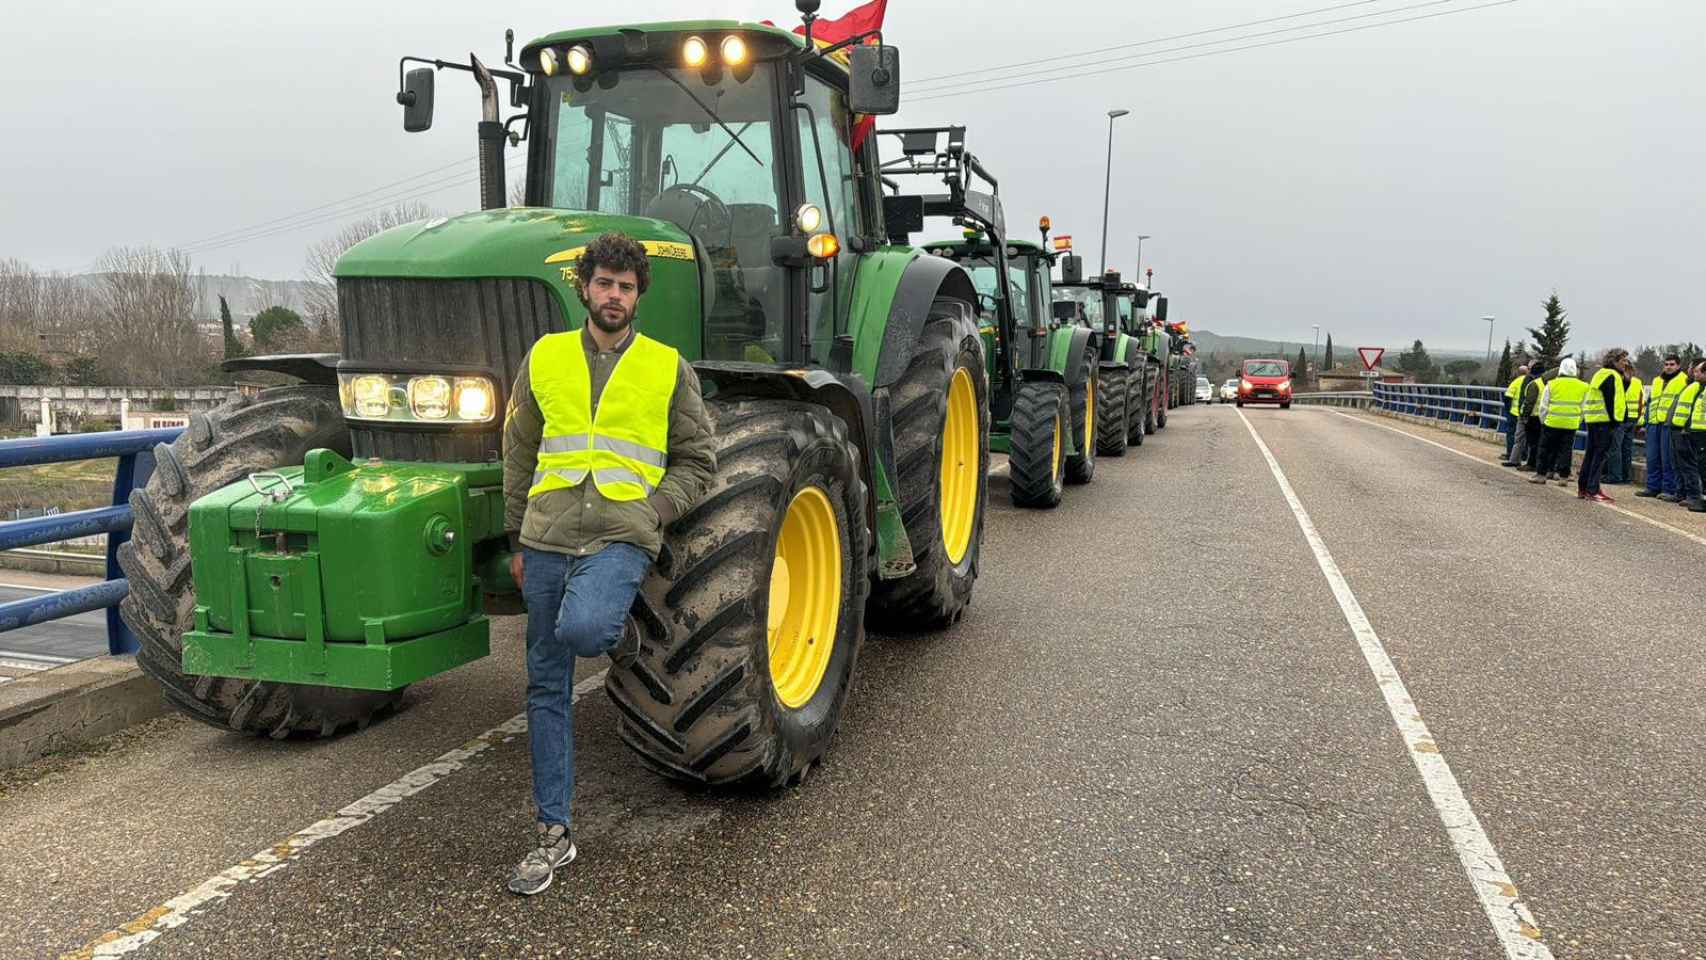 Pablo Bermejo, un agricultor vallisoletano que participa en las tractoradas espontáneas